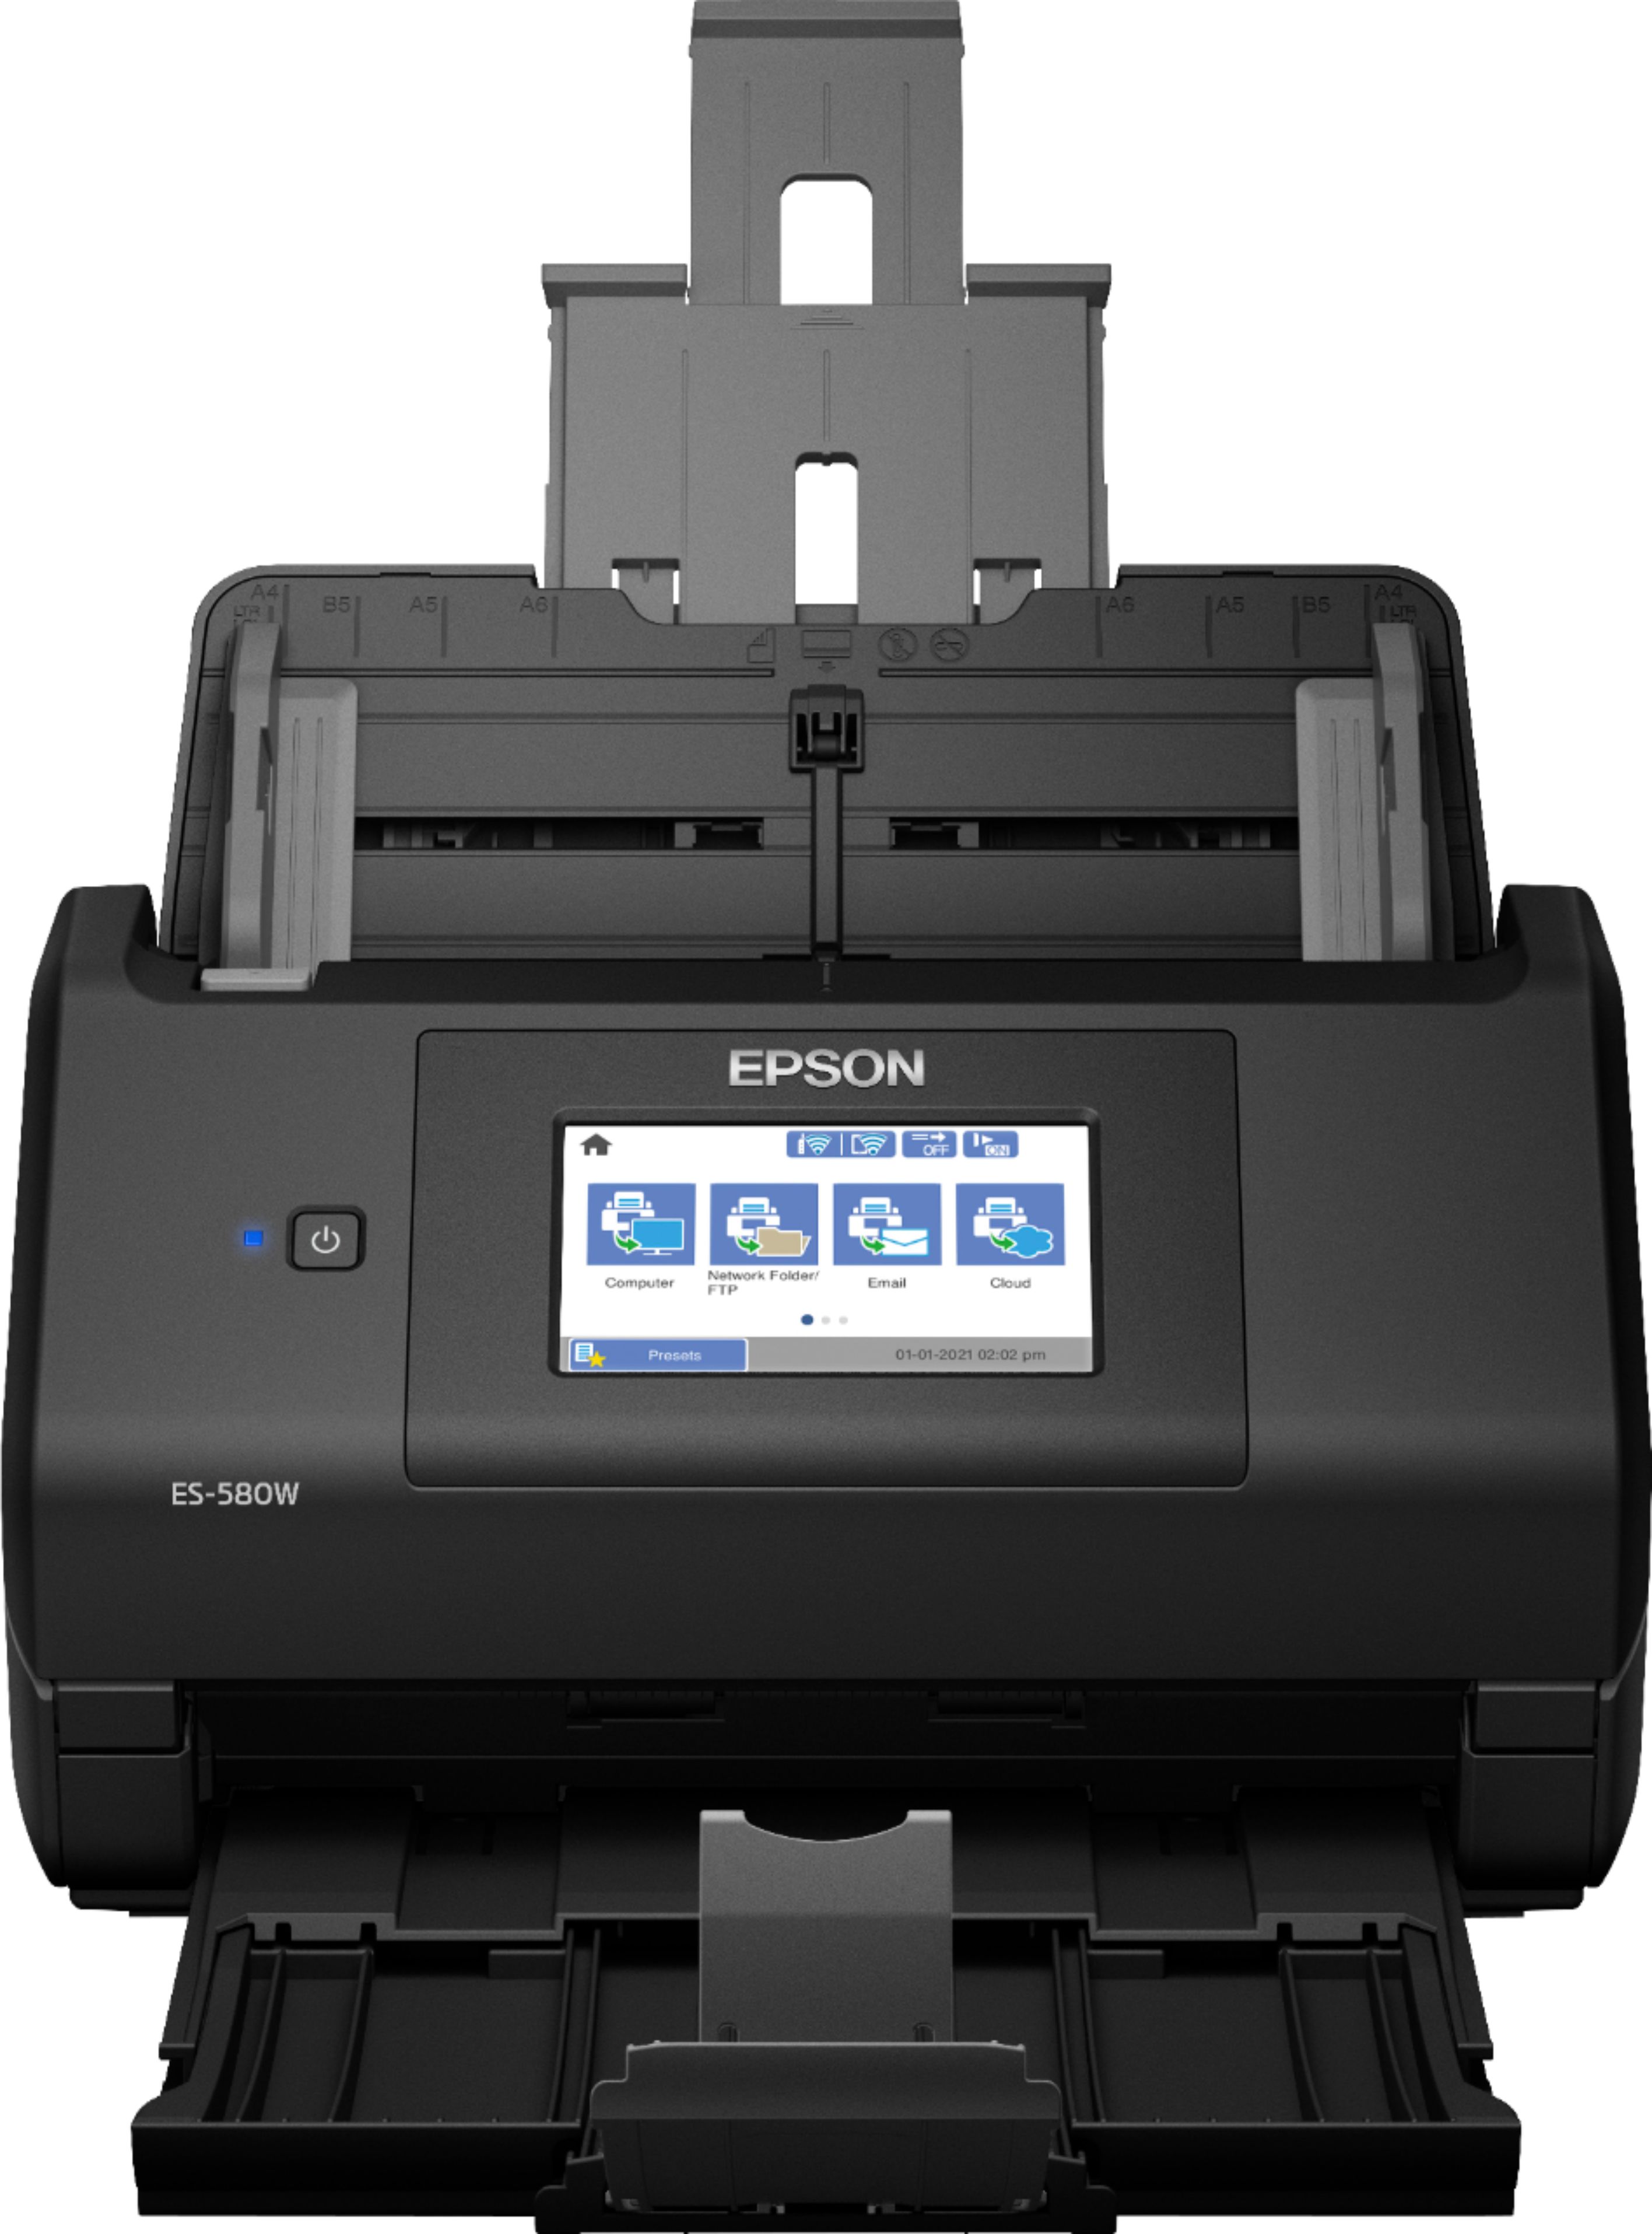 Epson - WorkForce ES-580W Wireless Duplex Touchscreen Desktop Document Scanner